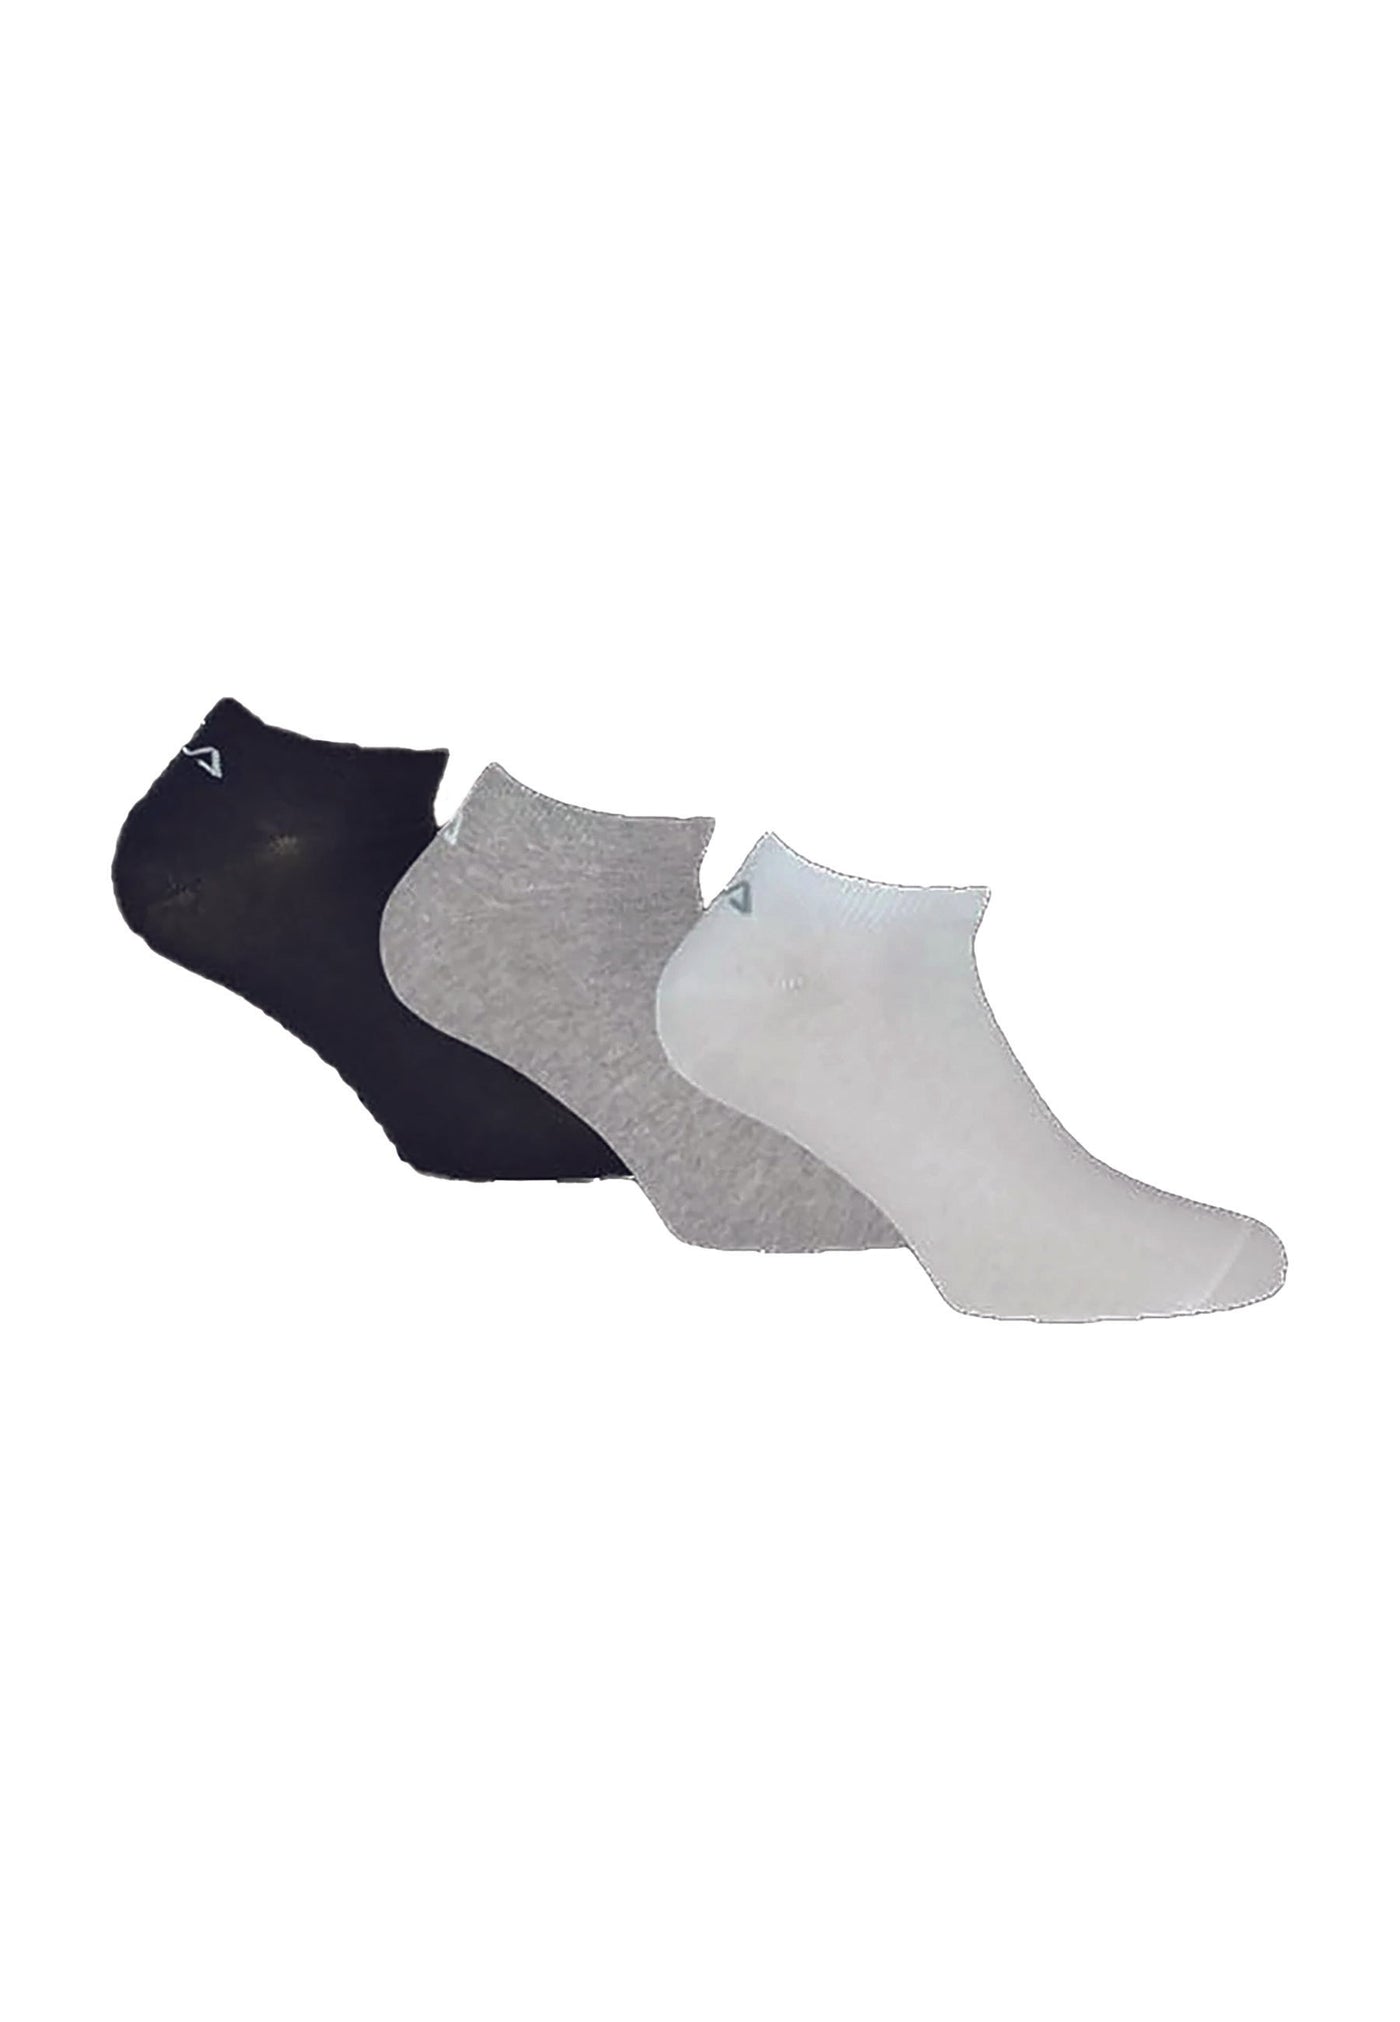 3er Pack Unisex Sportsocken Black-Lightgrey-White Socken Fila   